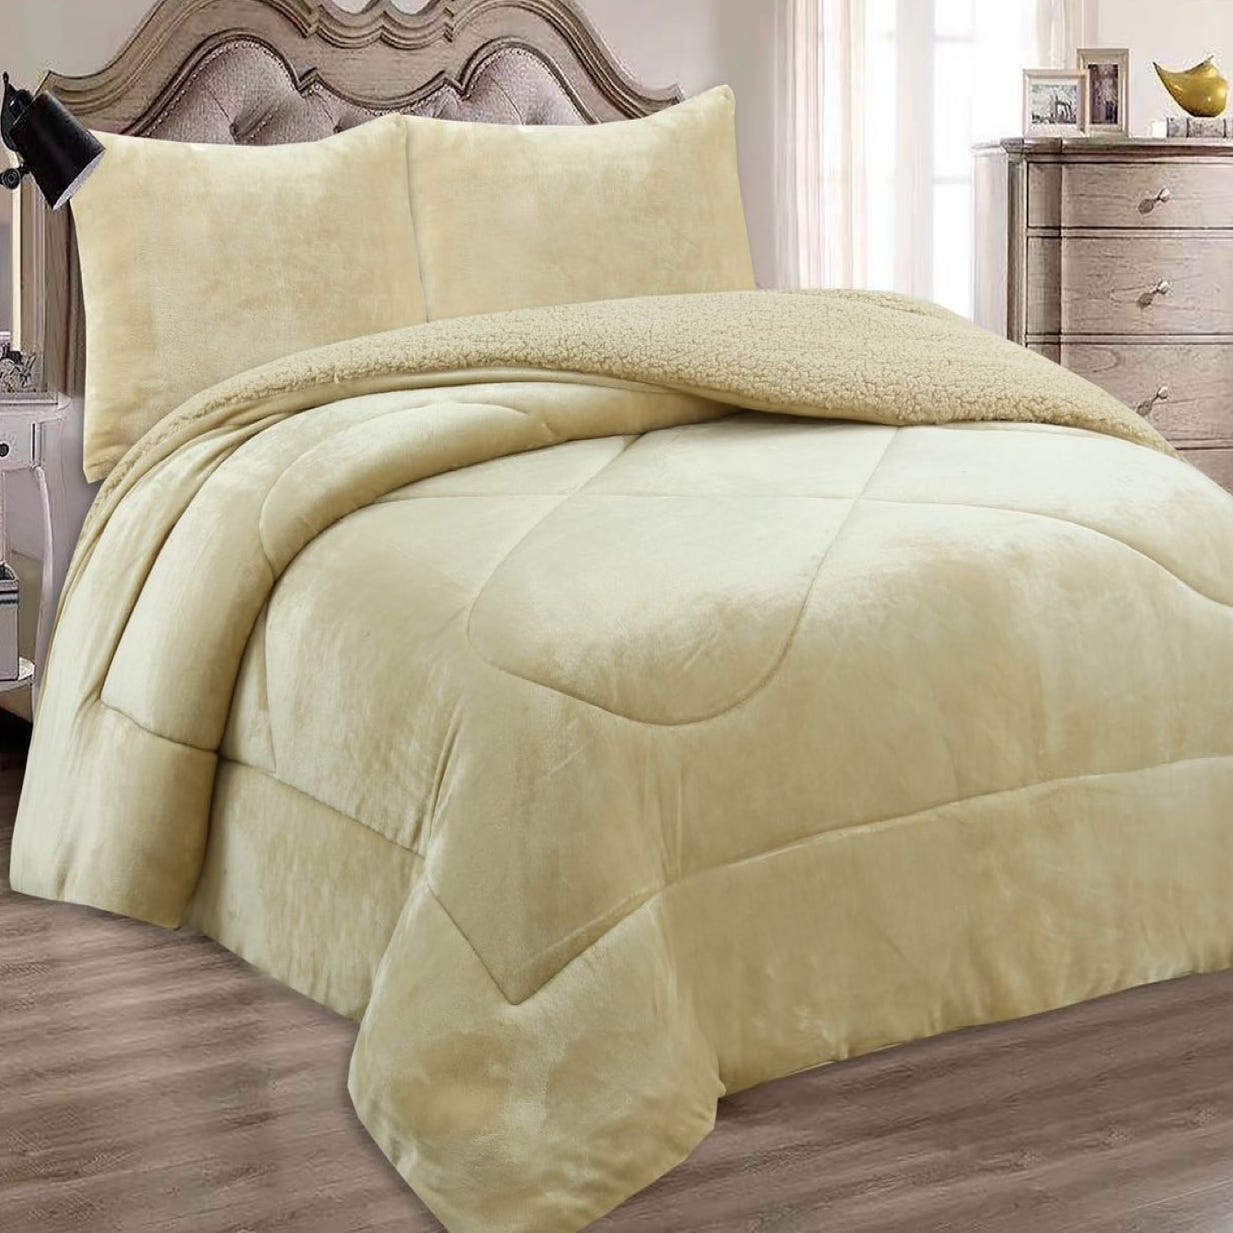 Mantas decorativas para la cama: abrigan y no pesan